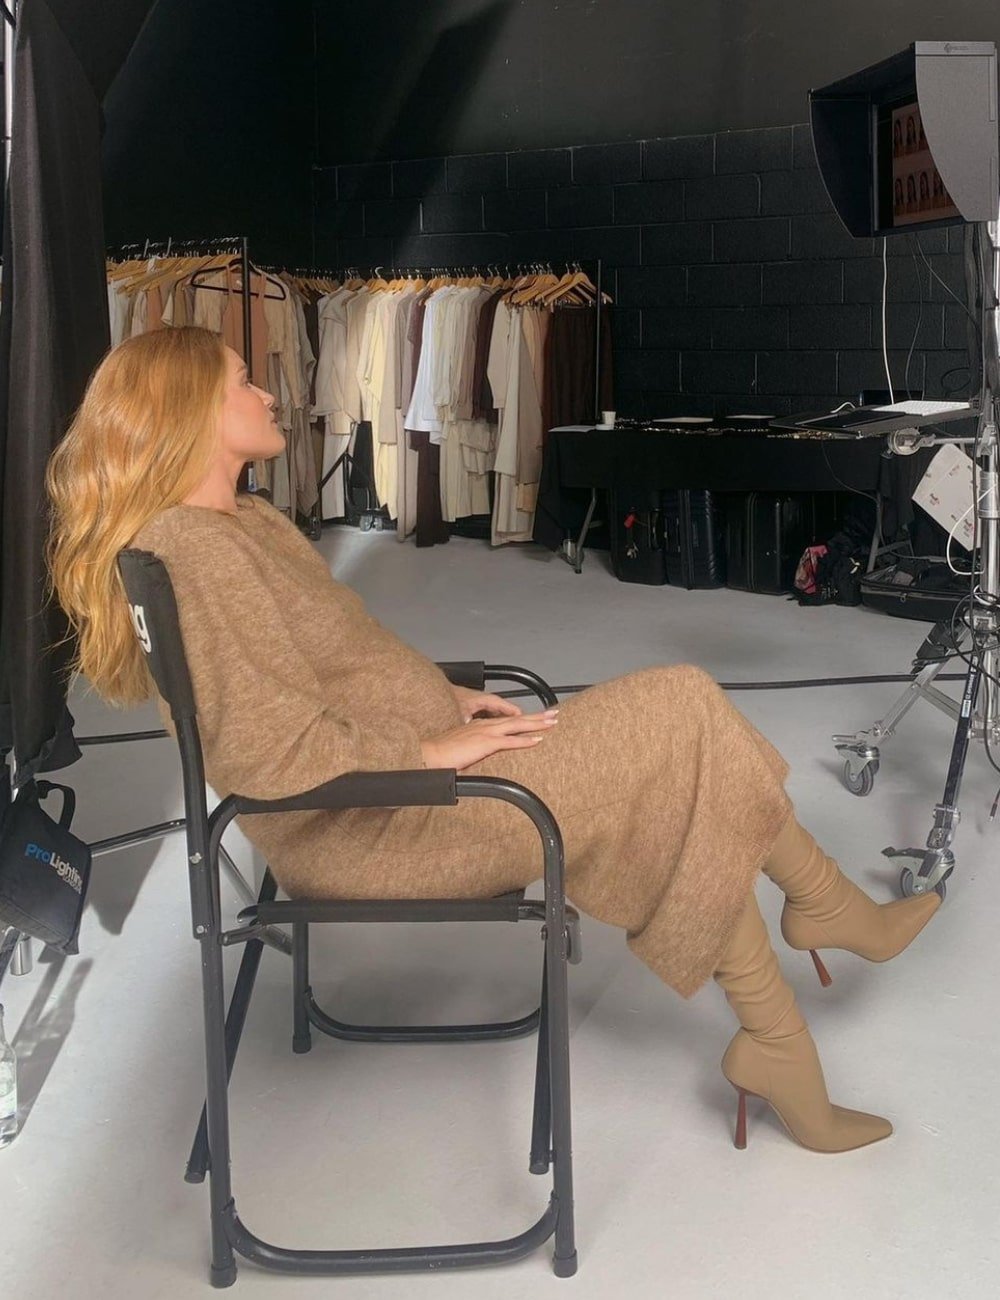 Rosie Huntington-Whiteley - vestido bege longo e botas no mesmo tom - Quiet Luxury - Inverno - sentada em uma cadeira - https://stealthelook.com.br